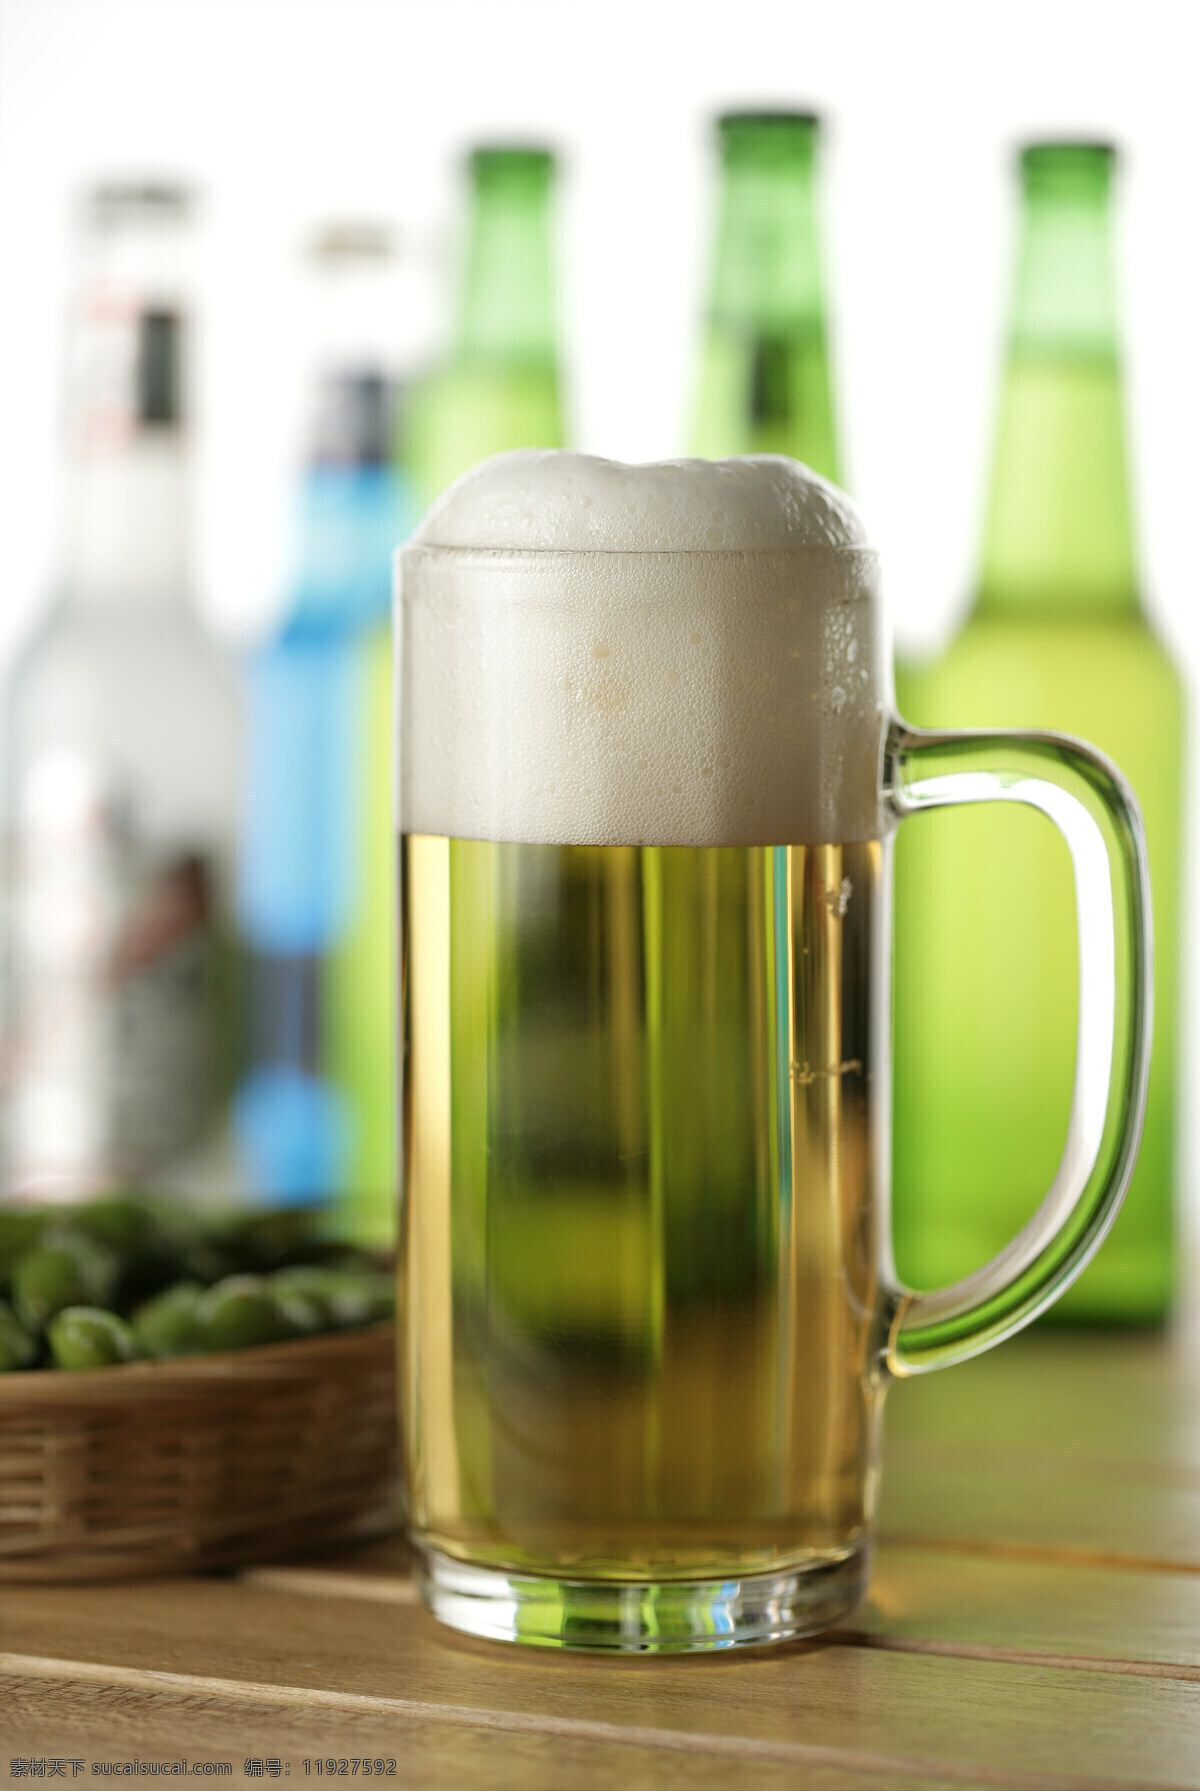 一杯 泡沫 啤酒 酒水 瓶装 很多瓶 旁边 玻璃杯 酒杯 装 气泡 一杯啤酒 品质 酒吧 销售 广告 宣传 高清图片 酒类图片 餐饮美食